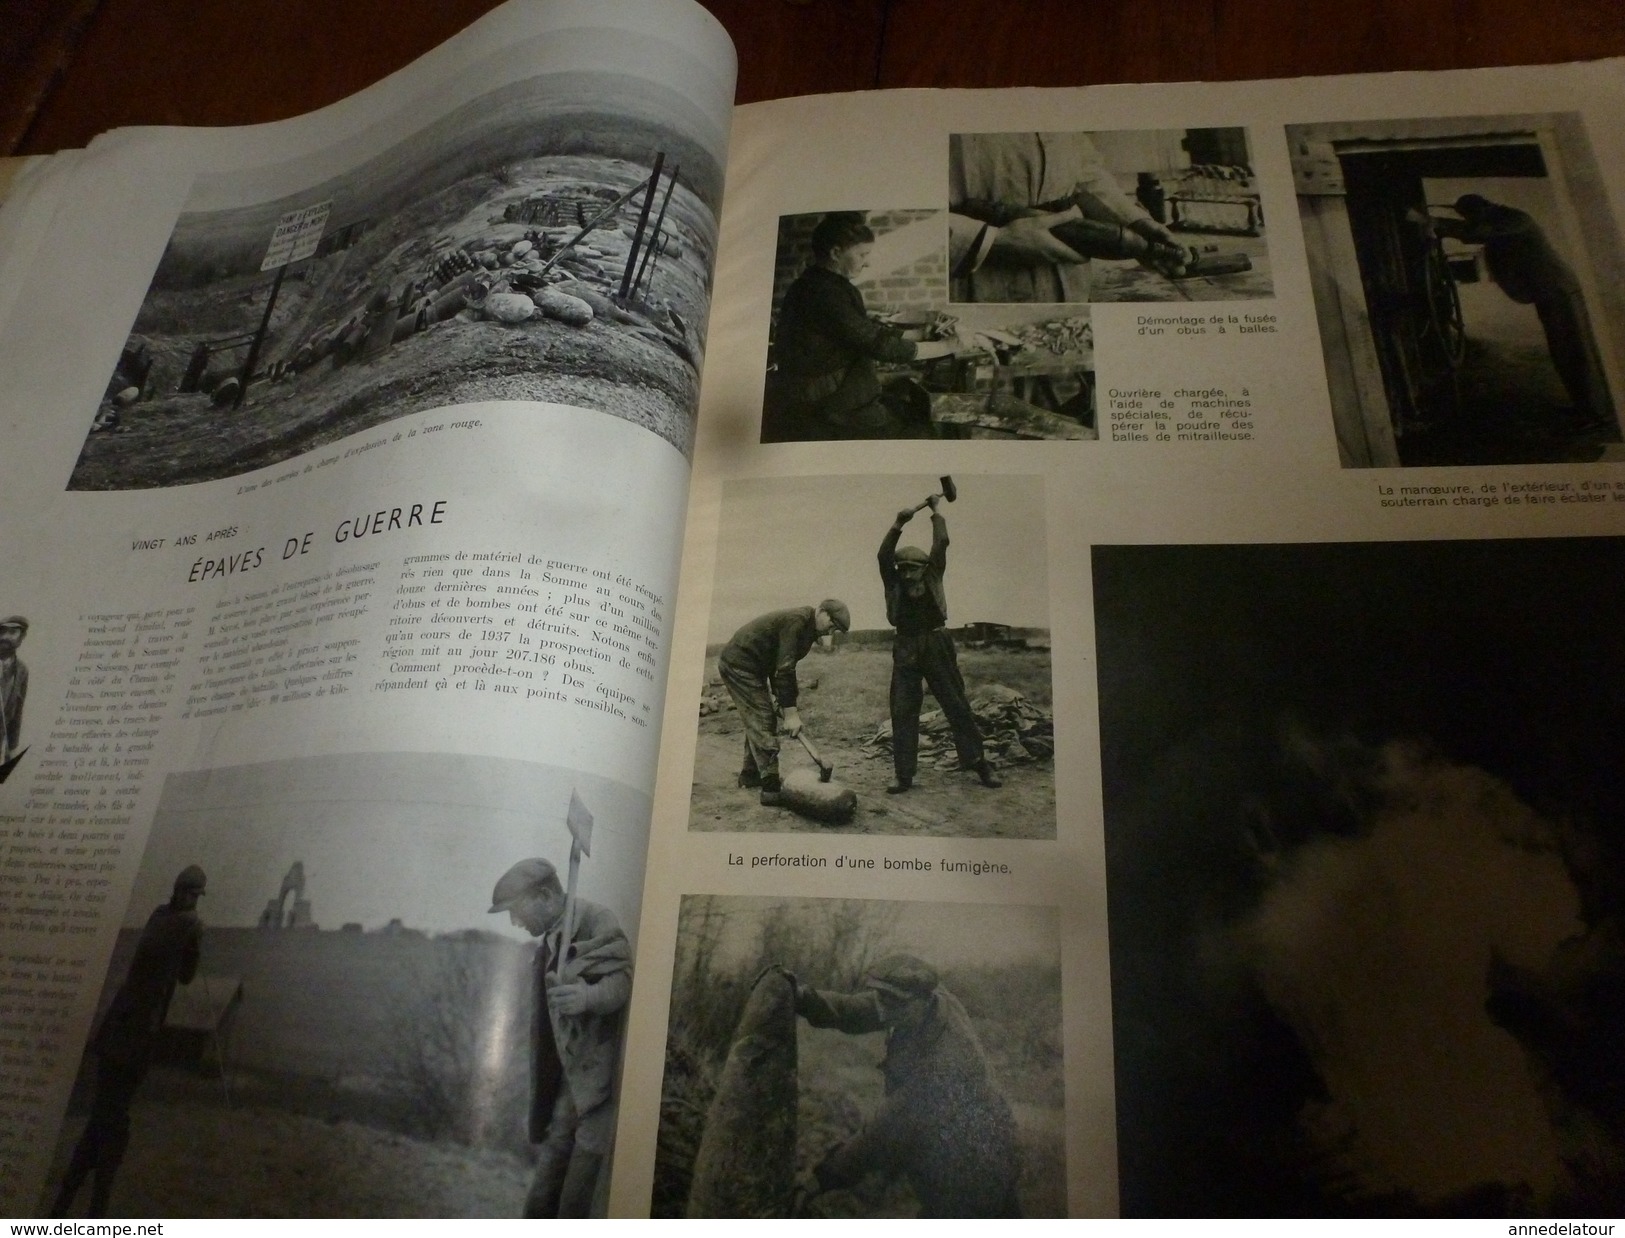 1938 L'ILLUSTRATION:La BELLE-POULE de l'école navale de Brest ;Epaves guerre 14-18;TAHITI ; Argentine; Nigéria ;etc